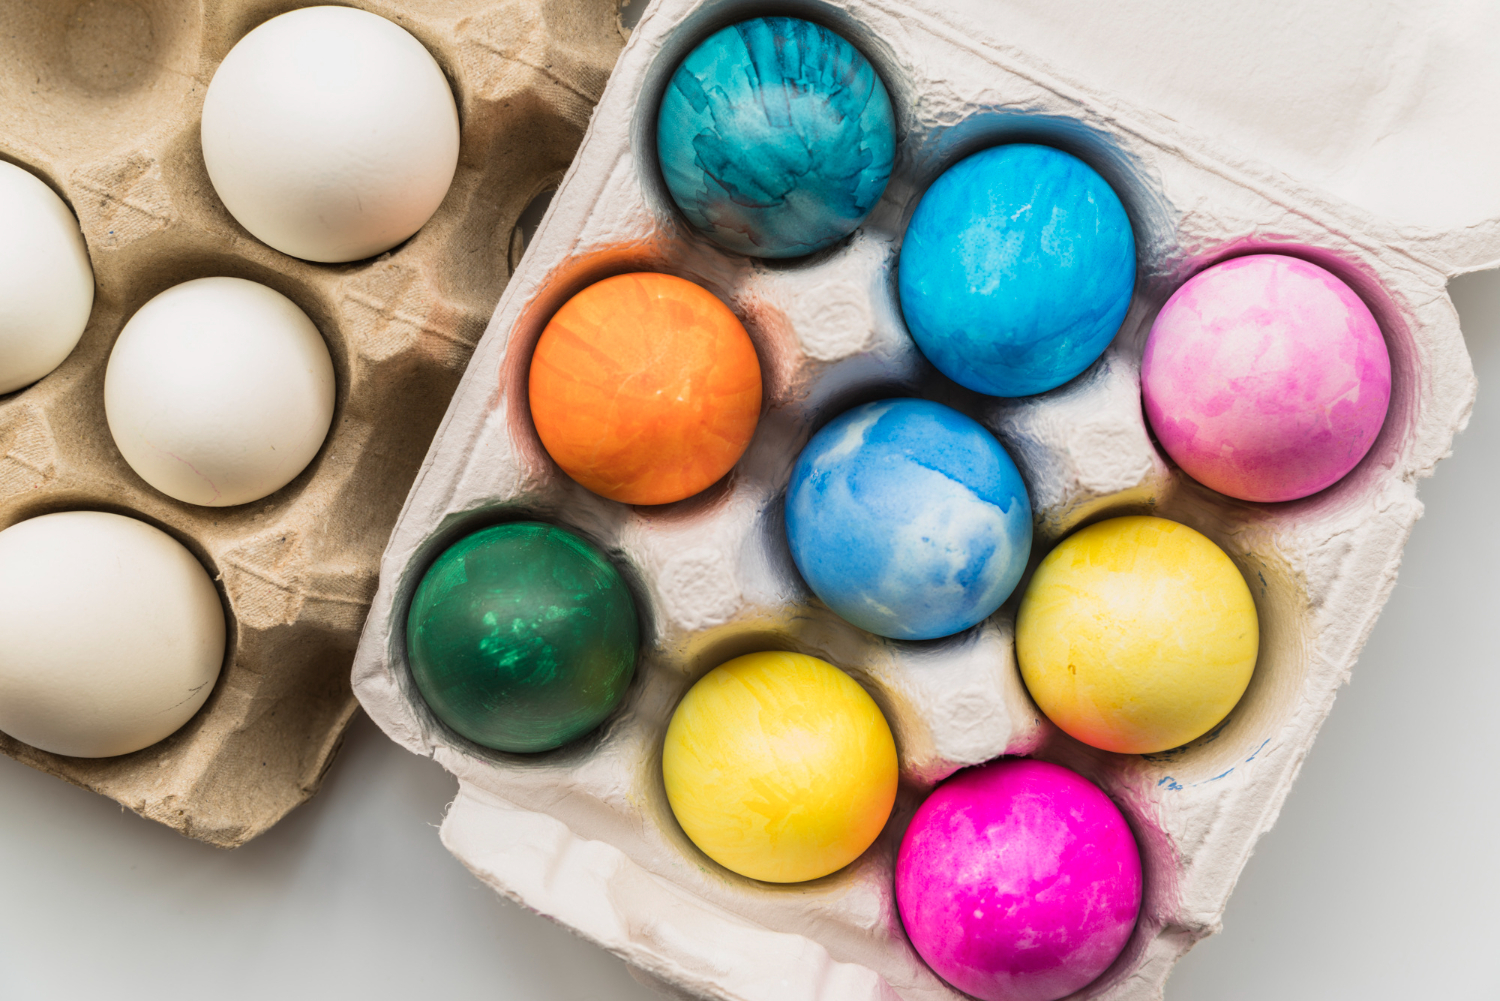 Врач Кутушов перечислил красители для яиц, провоцирующие сильную аллергию